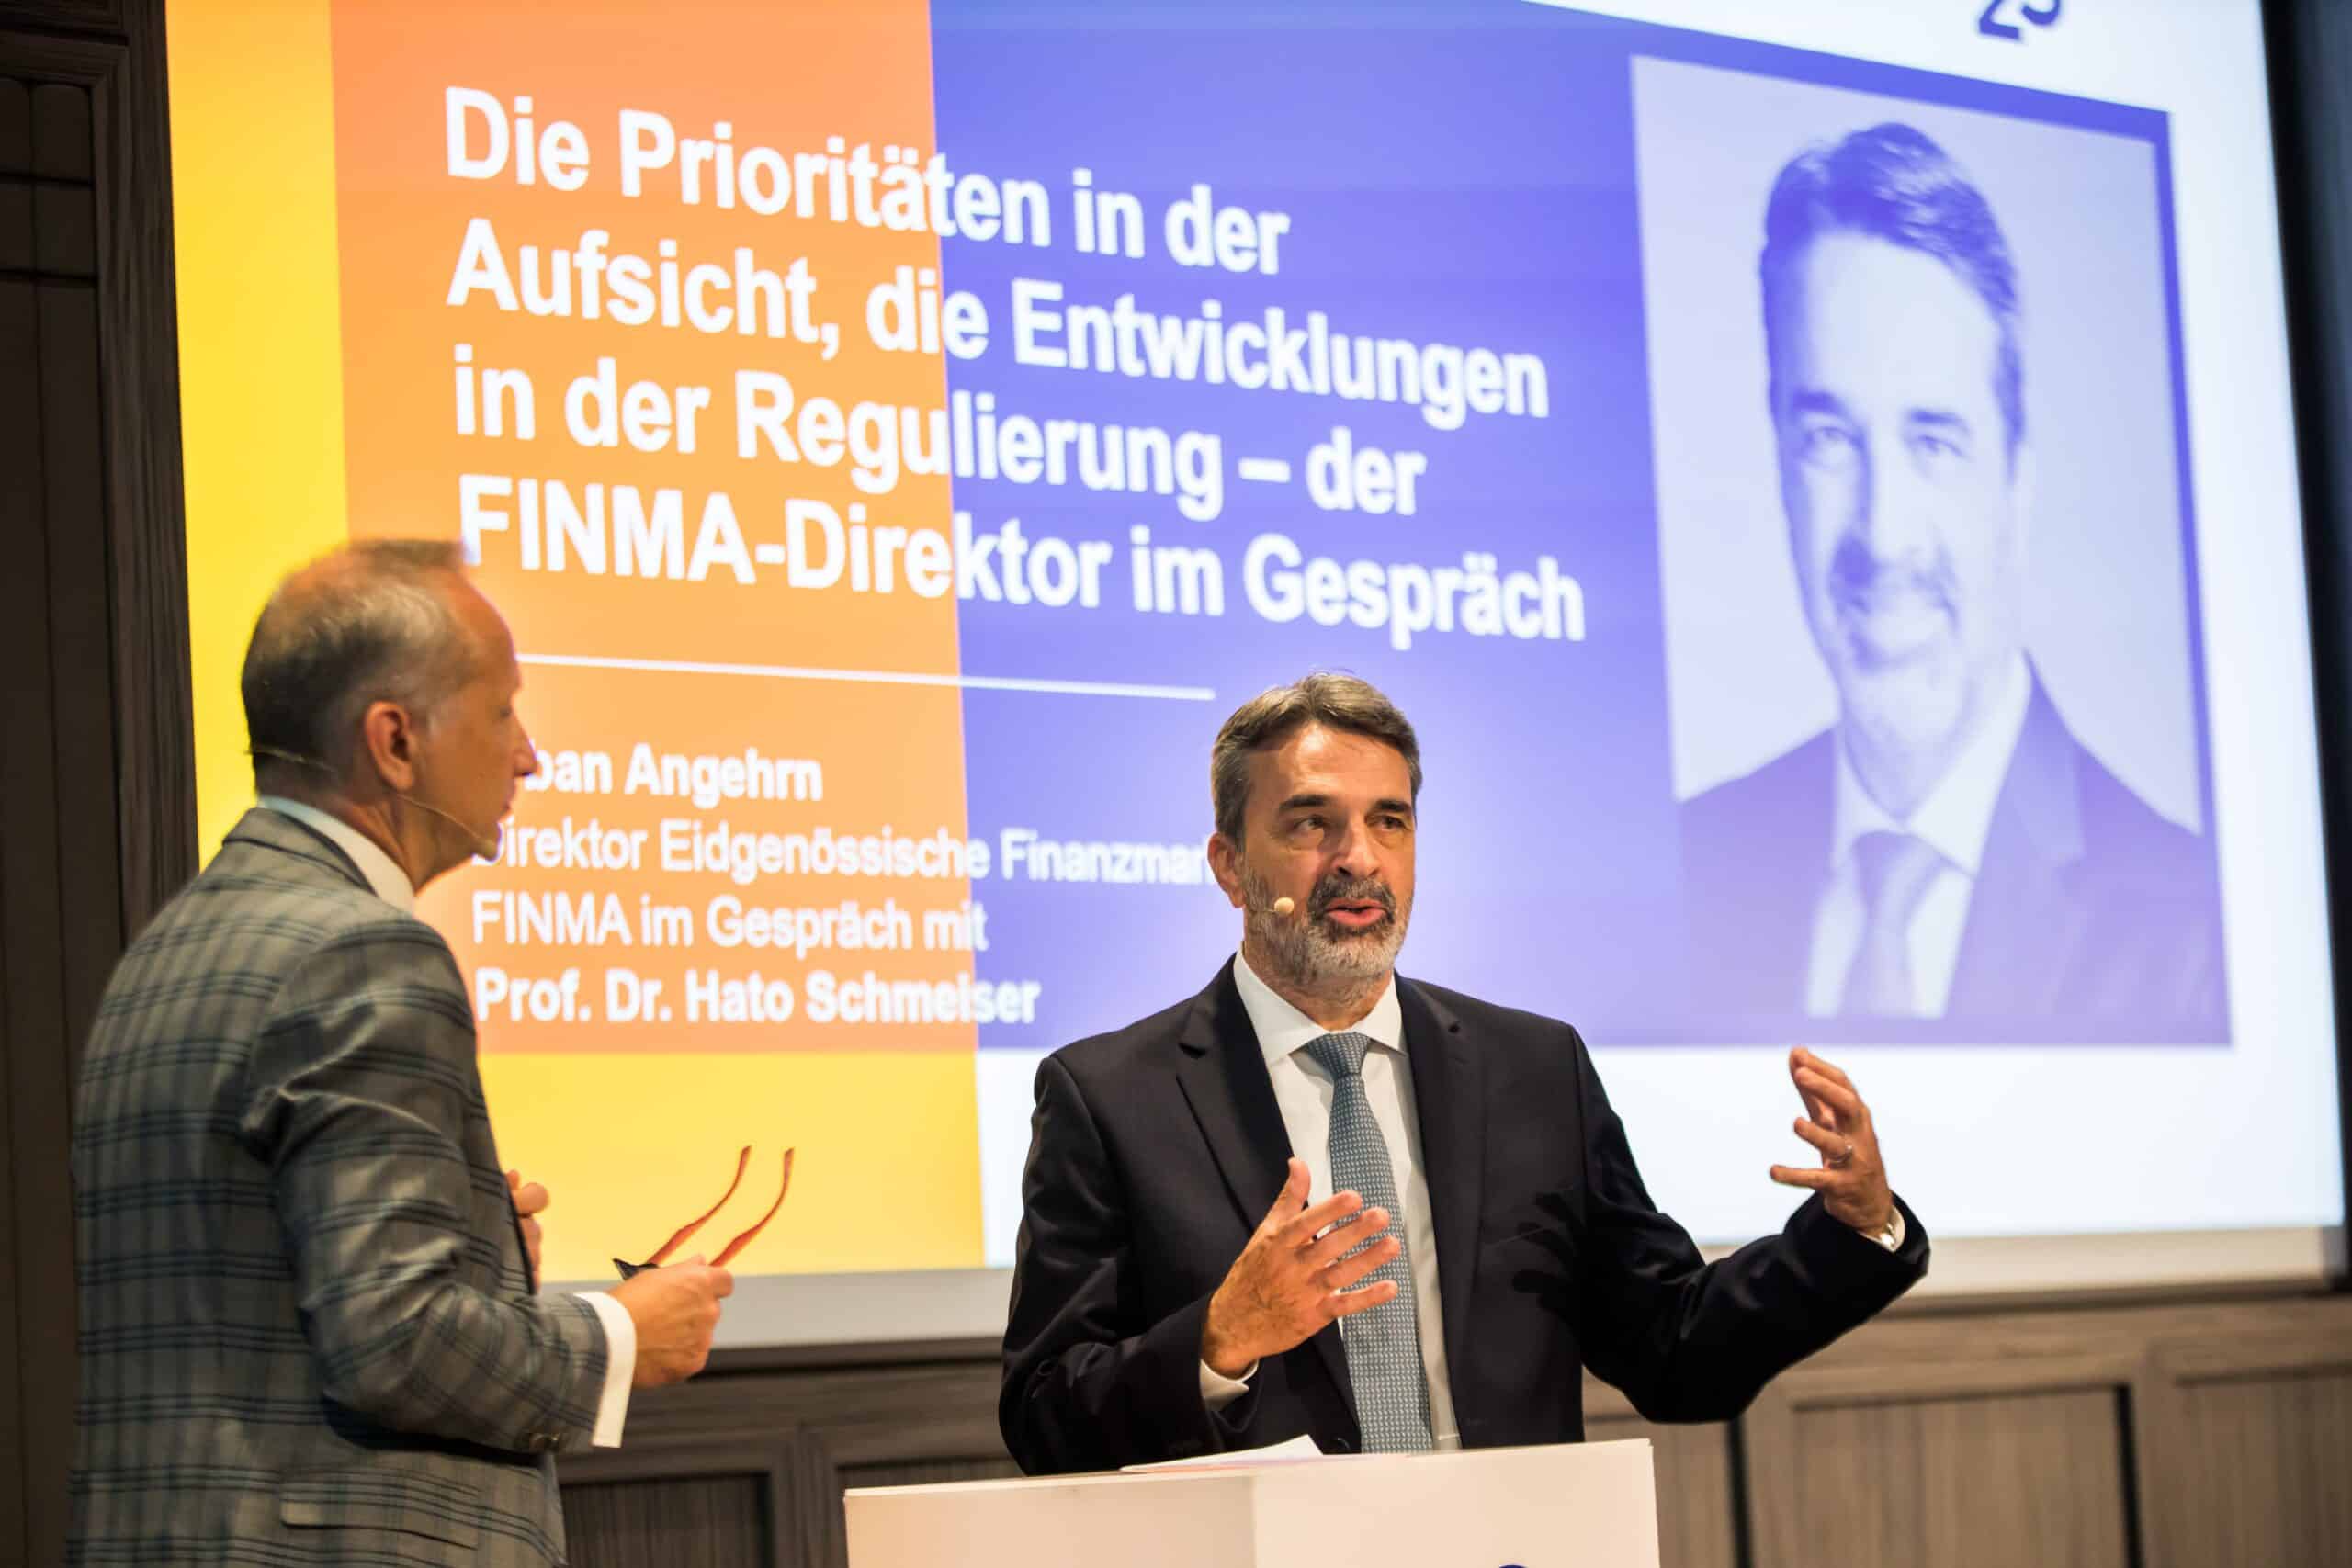 Versicherungsbroker Forum 23: Prof. Dr. Hato Schmeiser, Direktor Institut für Versicherungswirtschaft an der Universität St. Gallen, befragt Urban Angehrn, Direktor der FINMA.